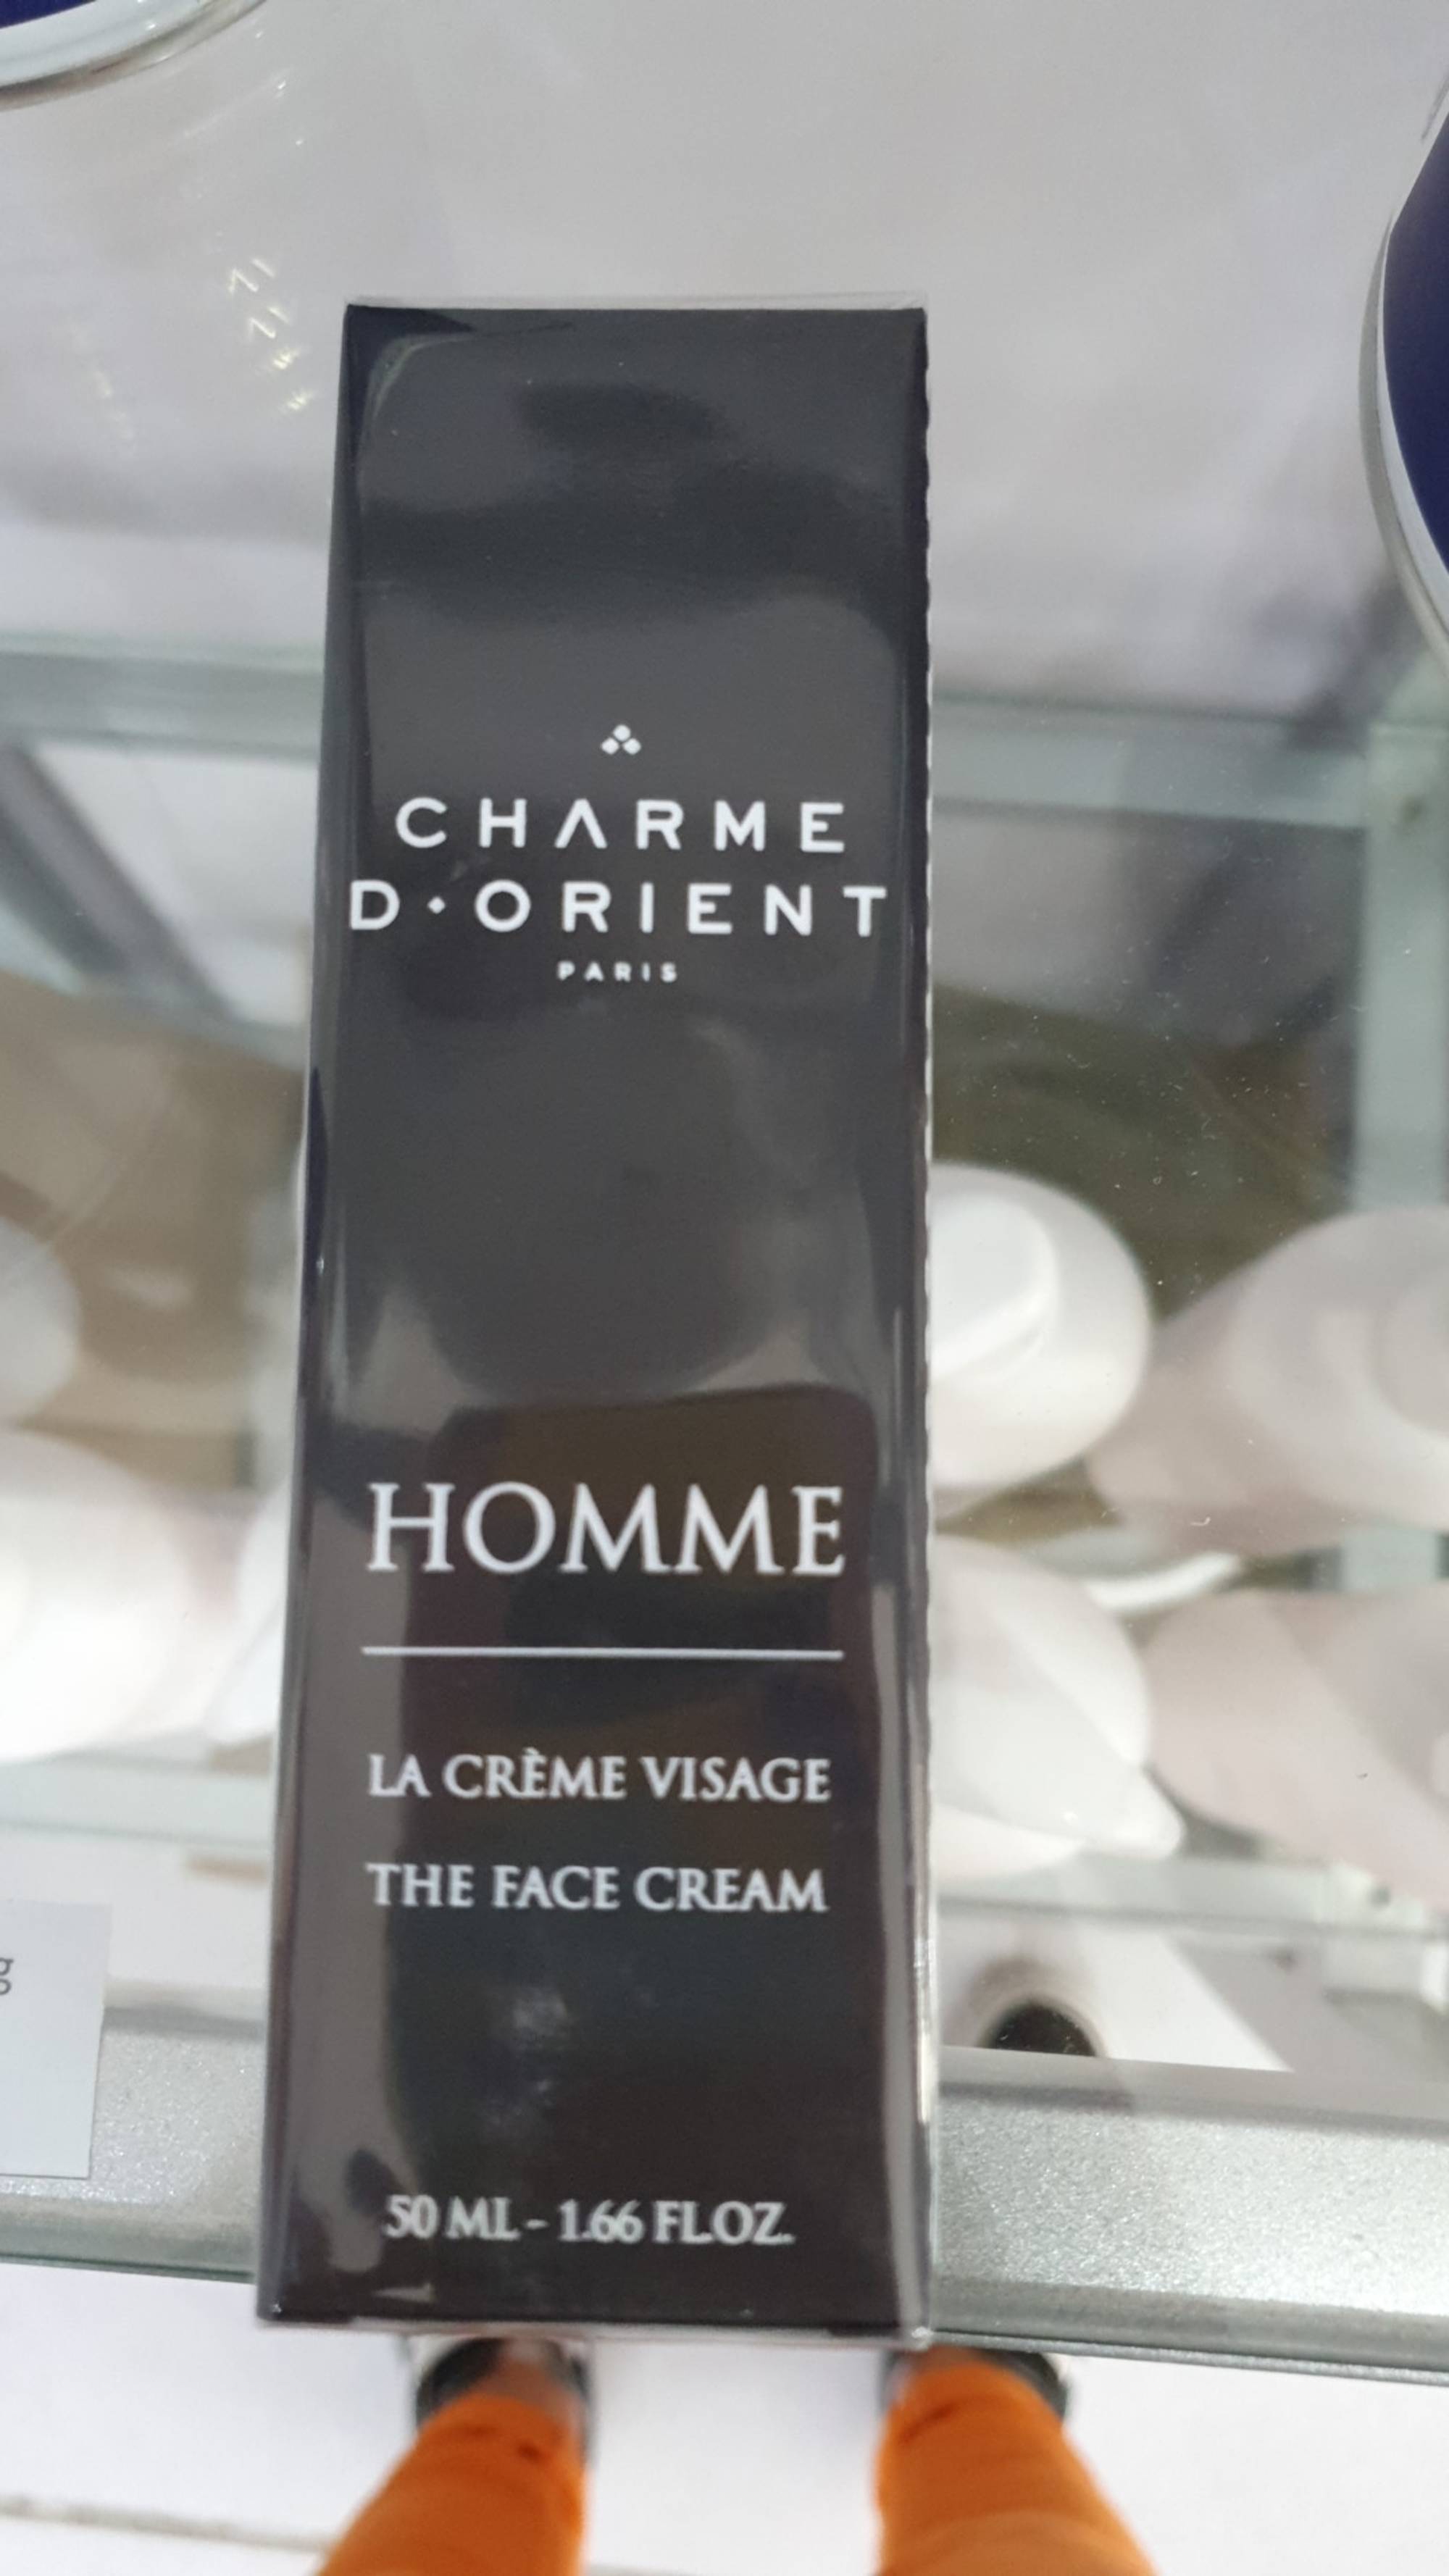 CHARME D'ORIENT - Homme - La crème visage